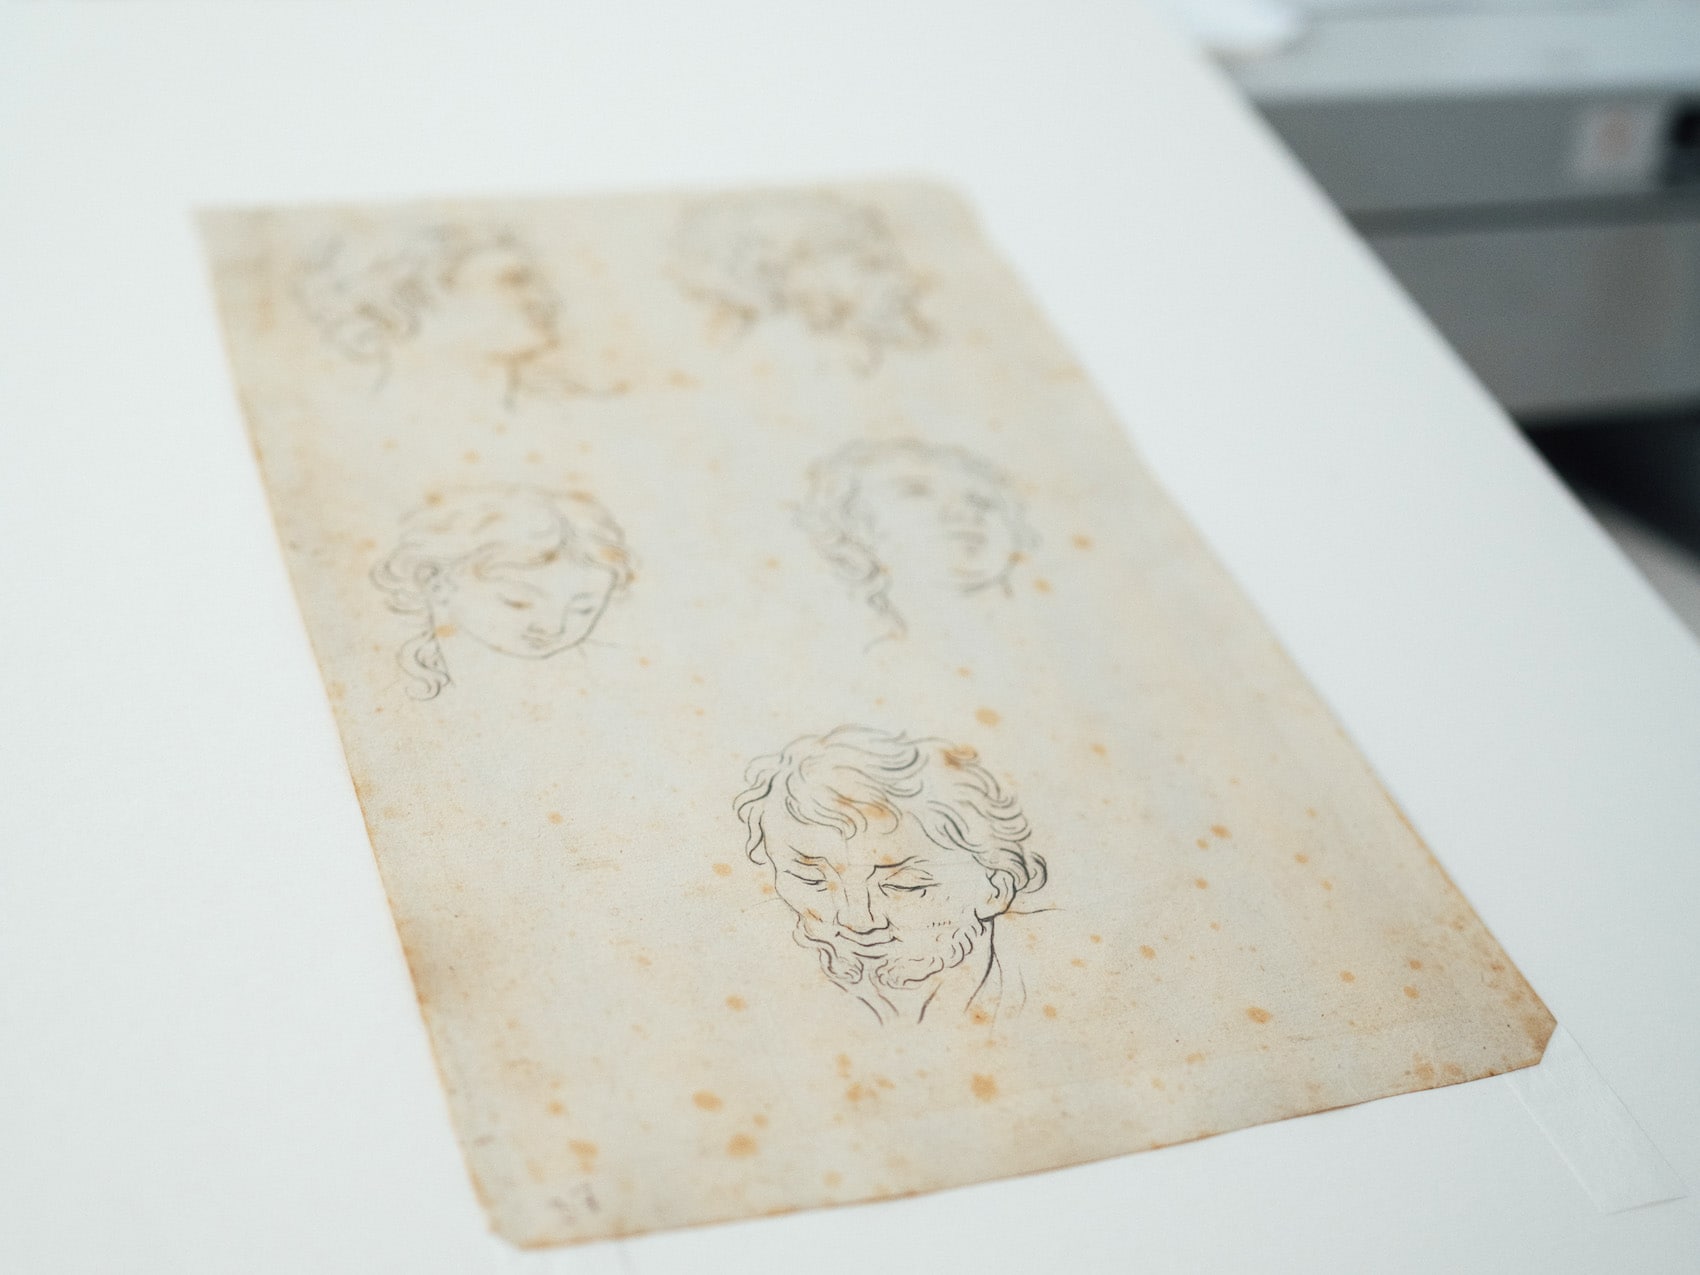 Zeichnungsübungen von Caspar David Friedrich. I Foto: TMV/Petermann